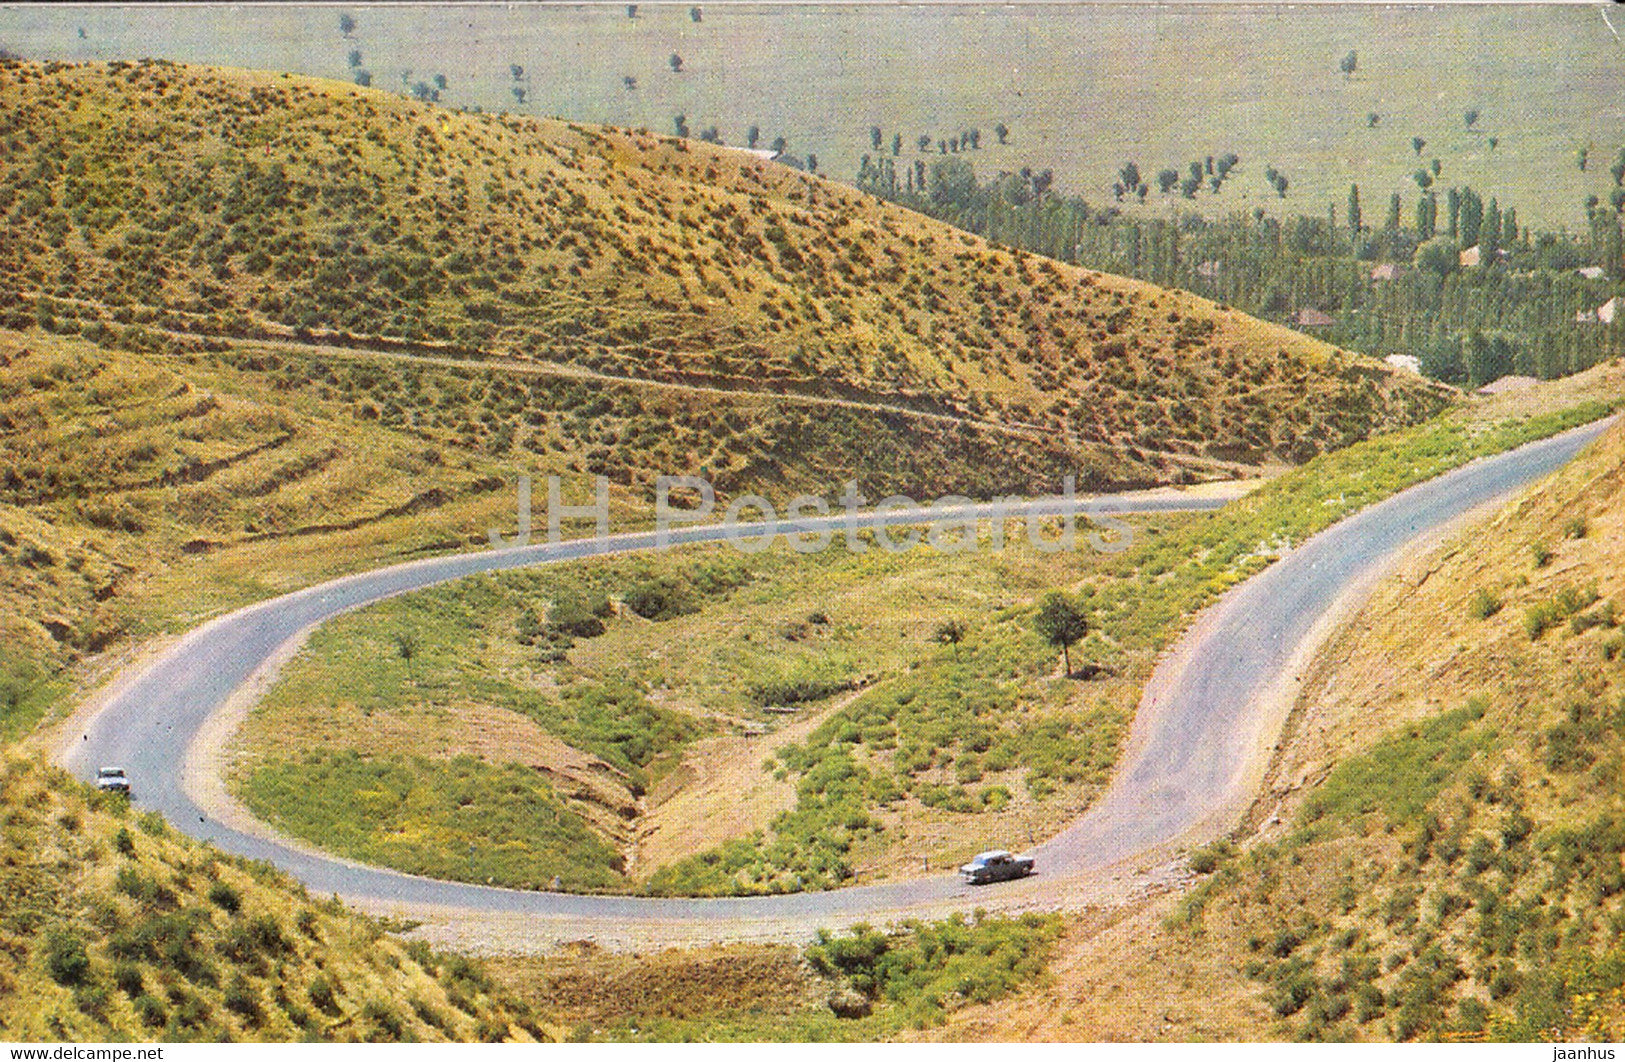 Akhsuin pass - 1970 - Azerbaijan USSR - unused - JH Postcards